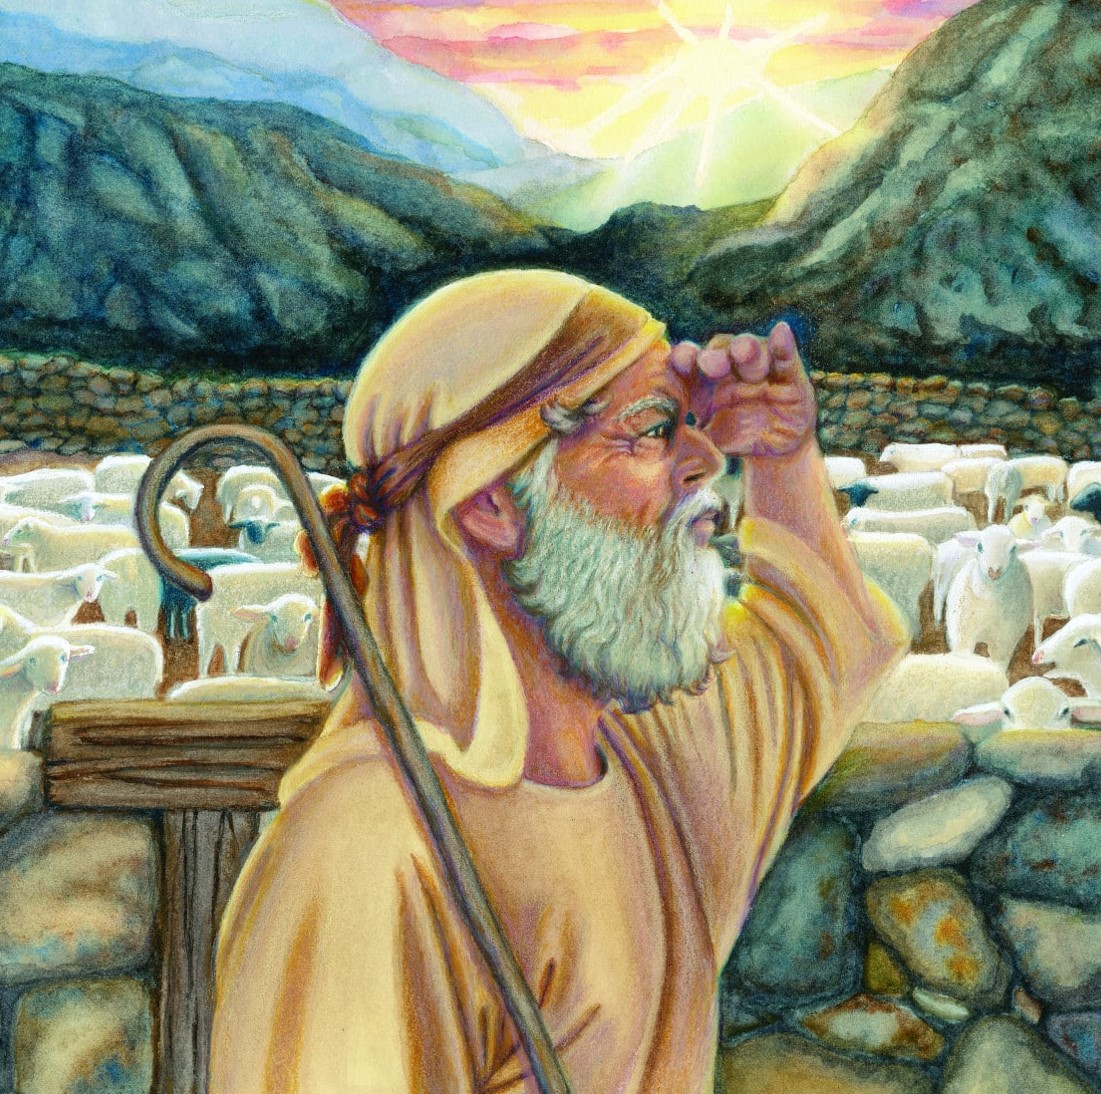 The searching shepherd, sheepfold